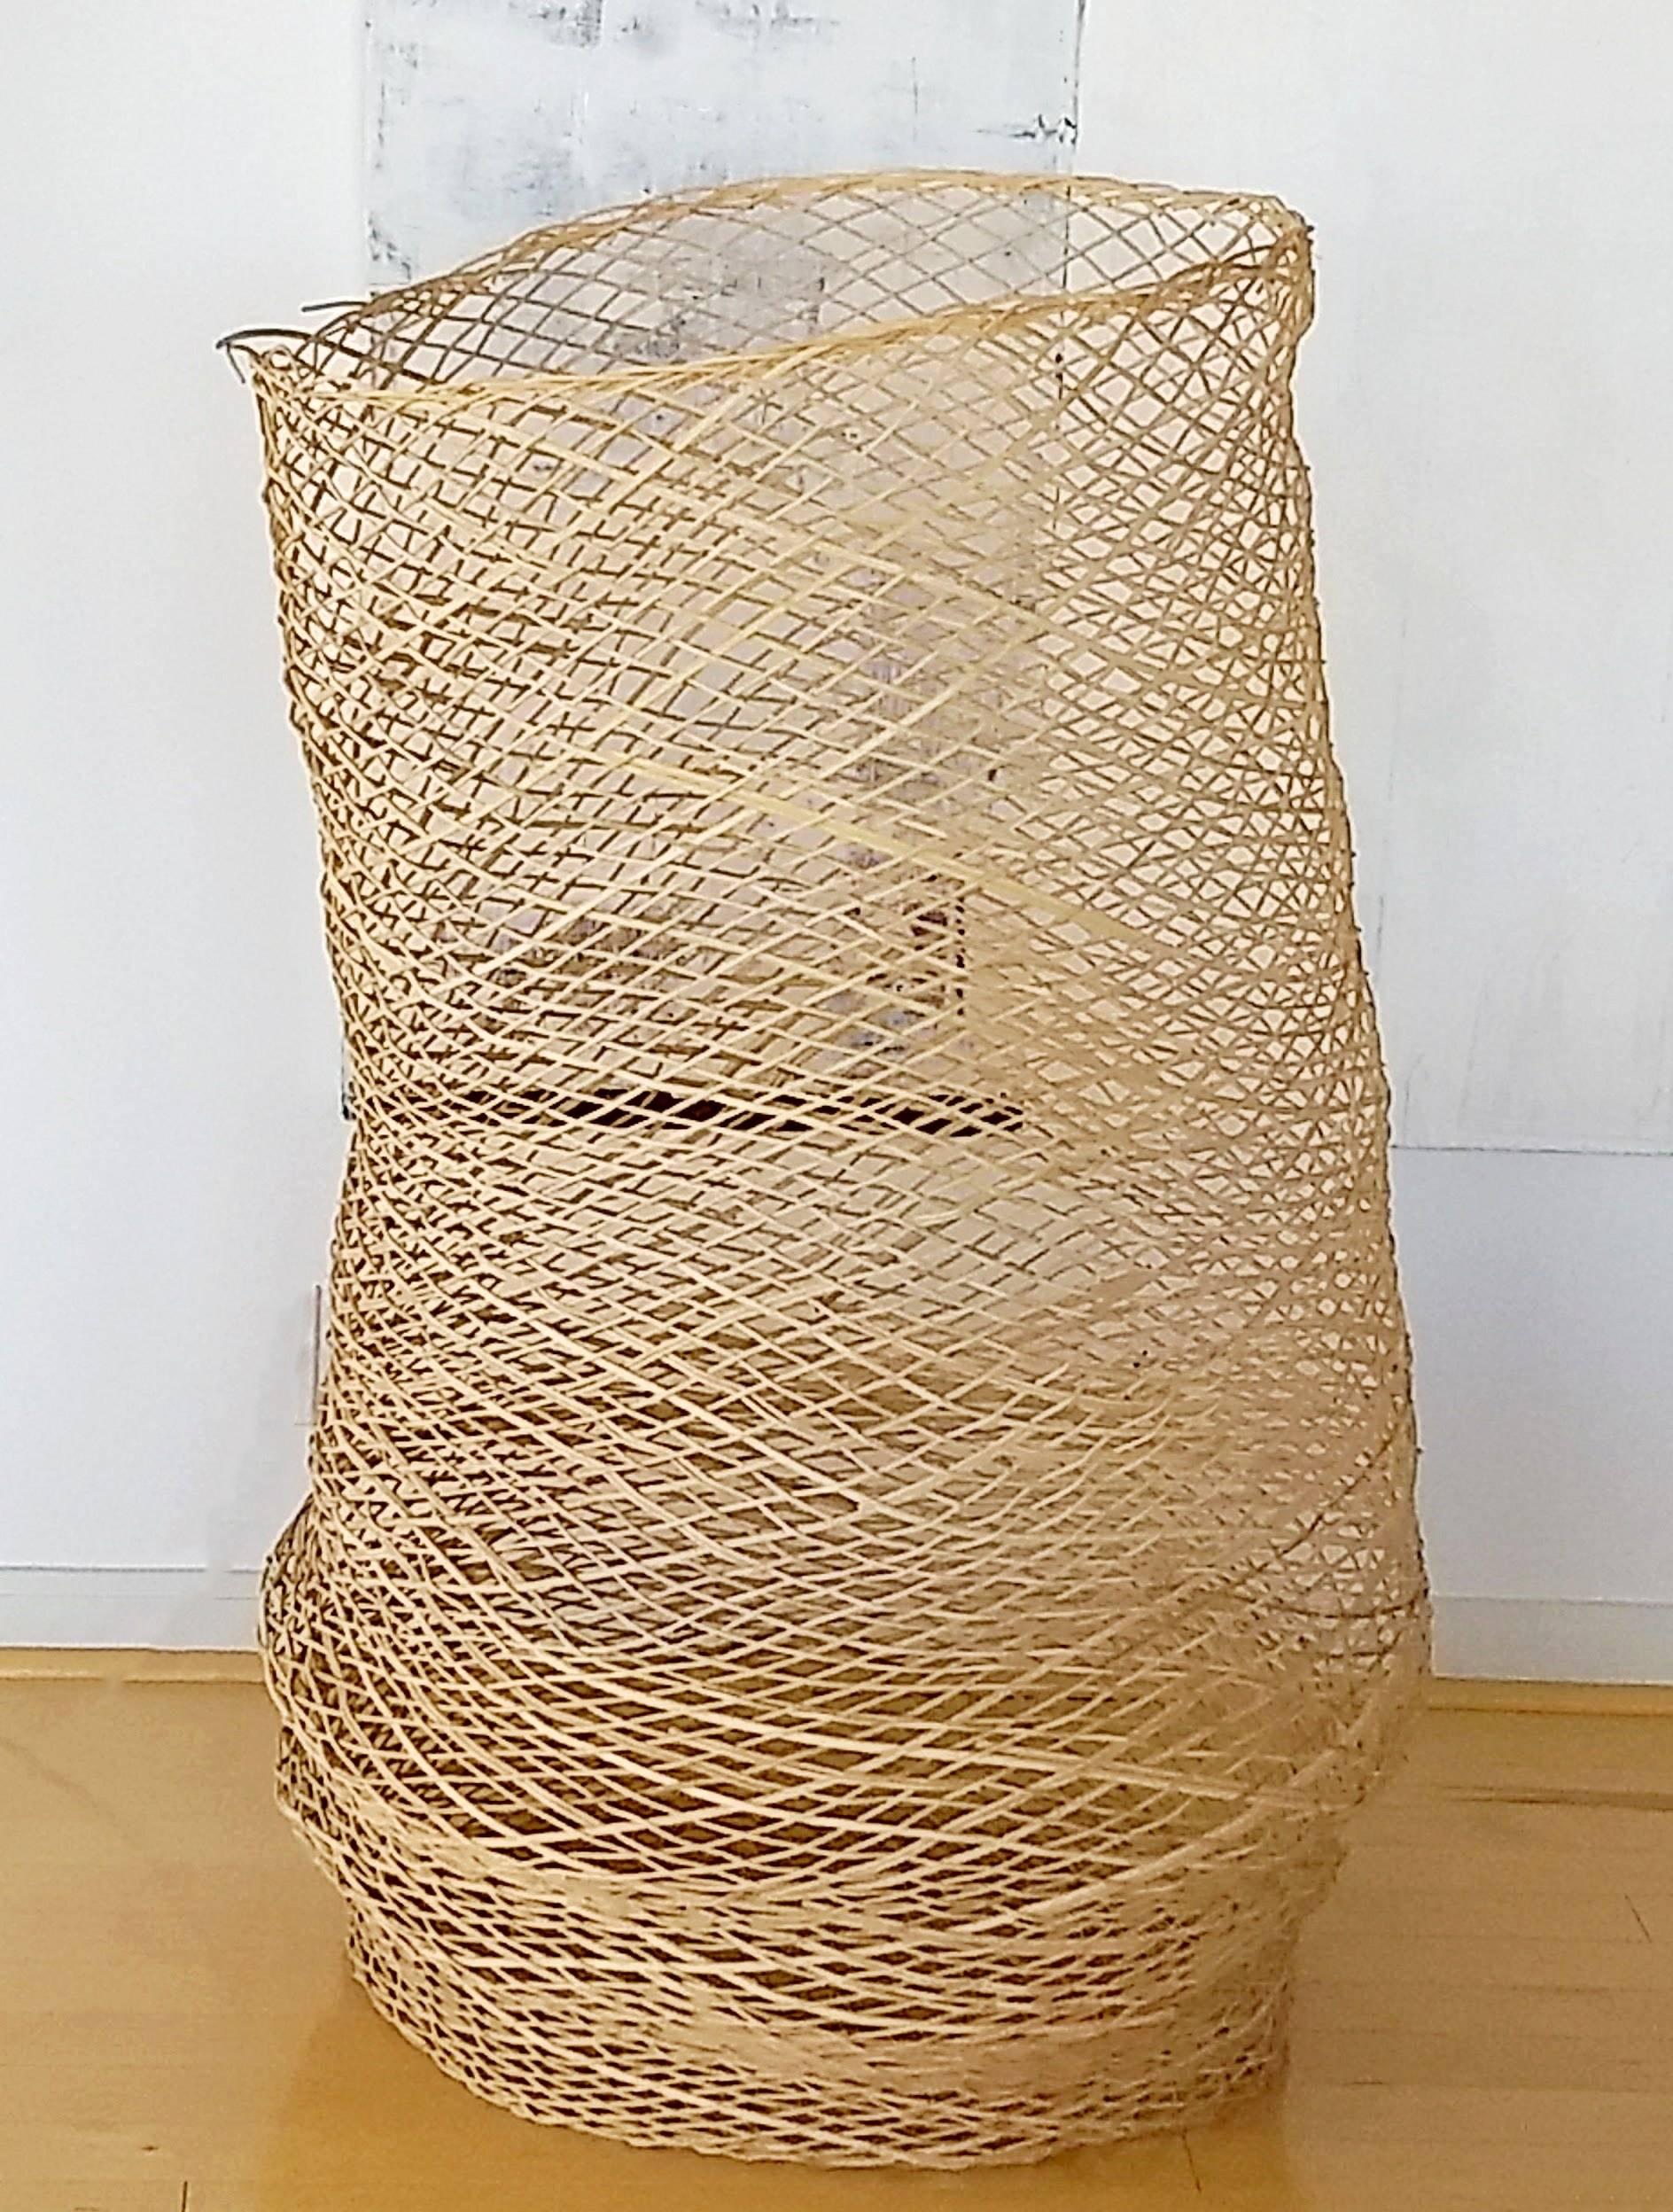 Modern Linda Kelly Contemporary Woven Basket Standing Floor Art Sculpture